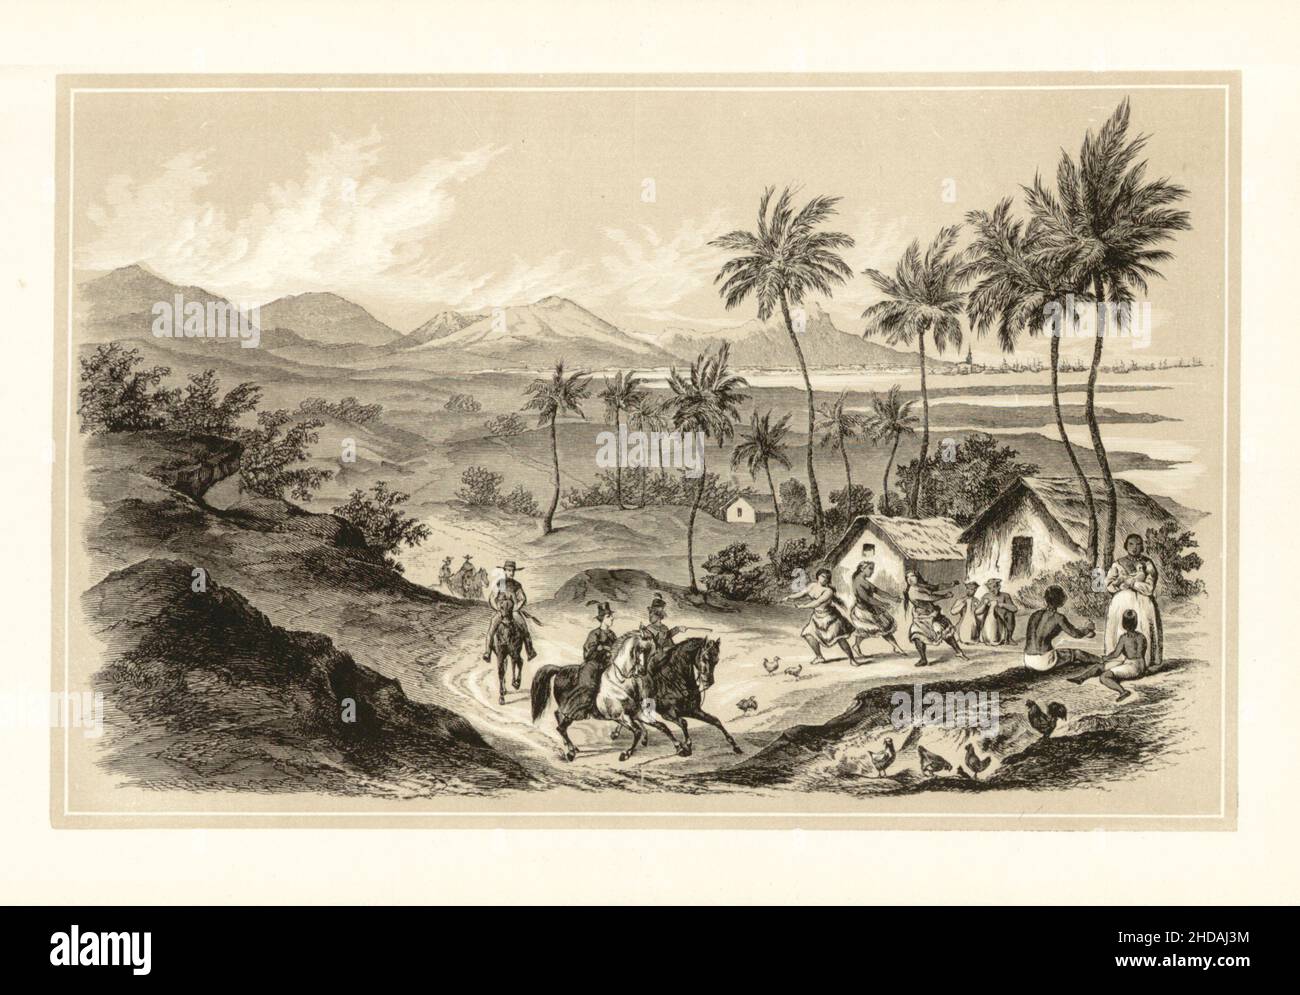 Lithographie antique du Royaume hawaïen du 19th siècle: Honolulu dans l'île de Ouahou.1856 expédition du Commodore Perry Banque D'Images